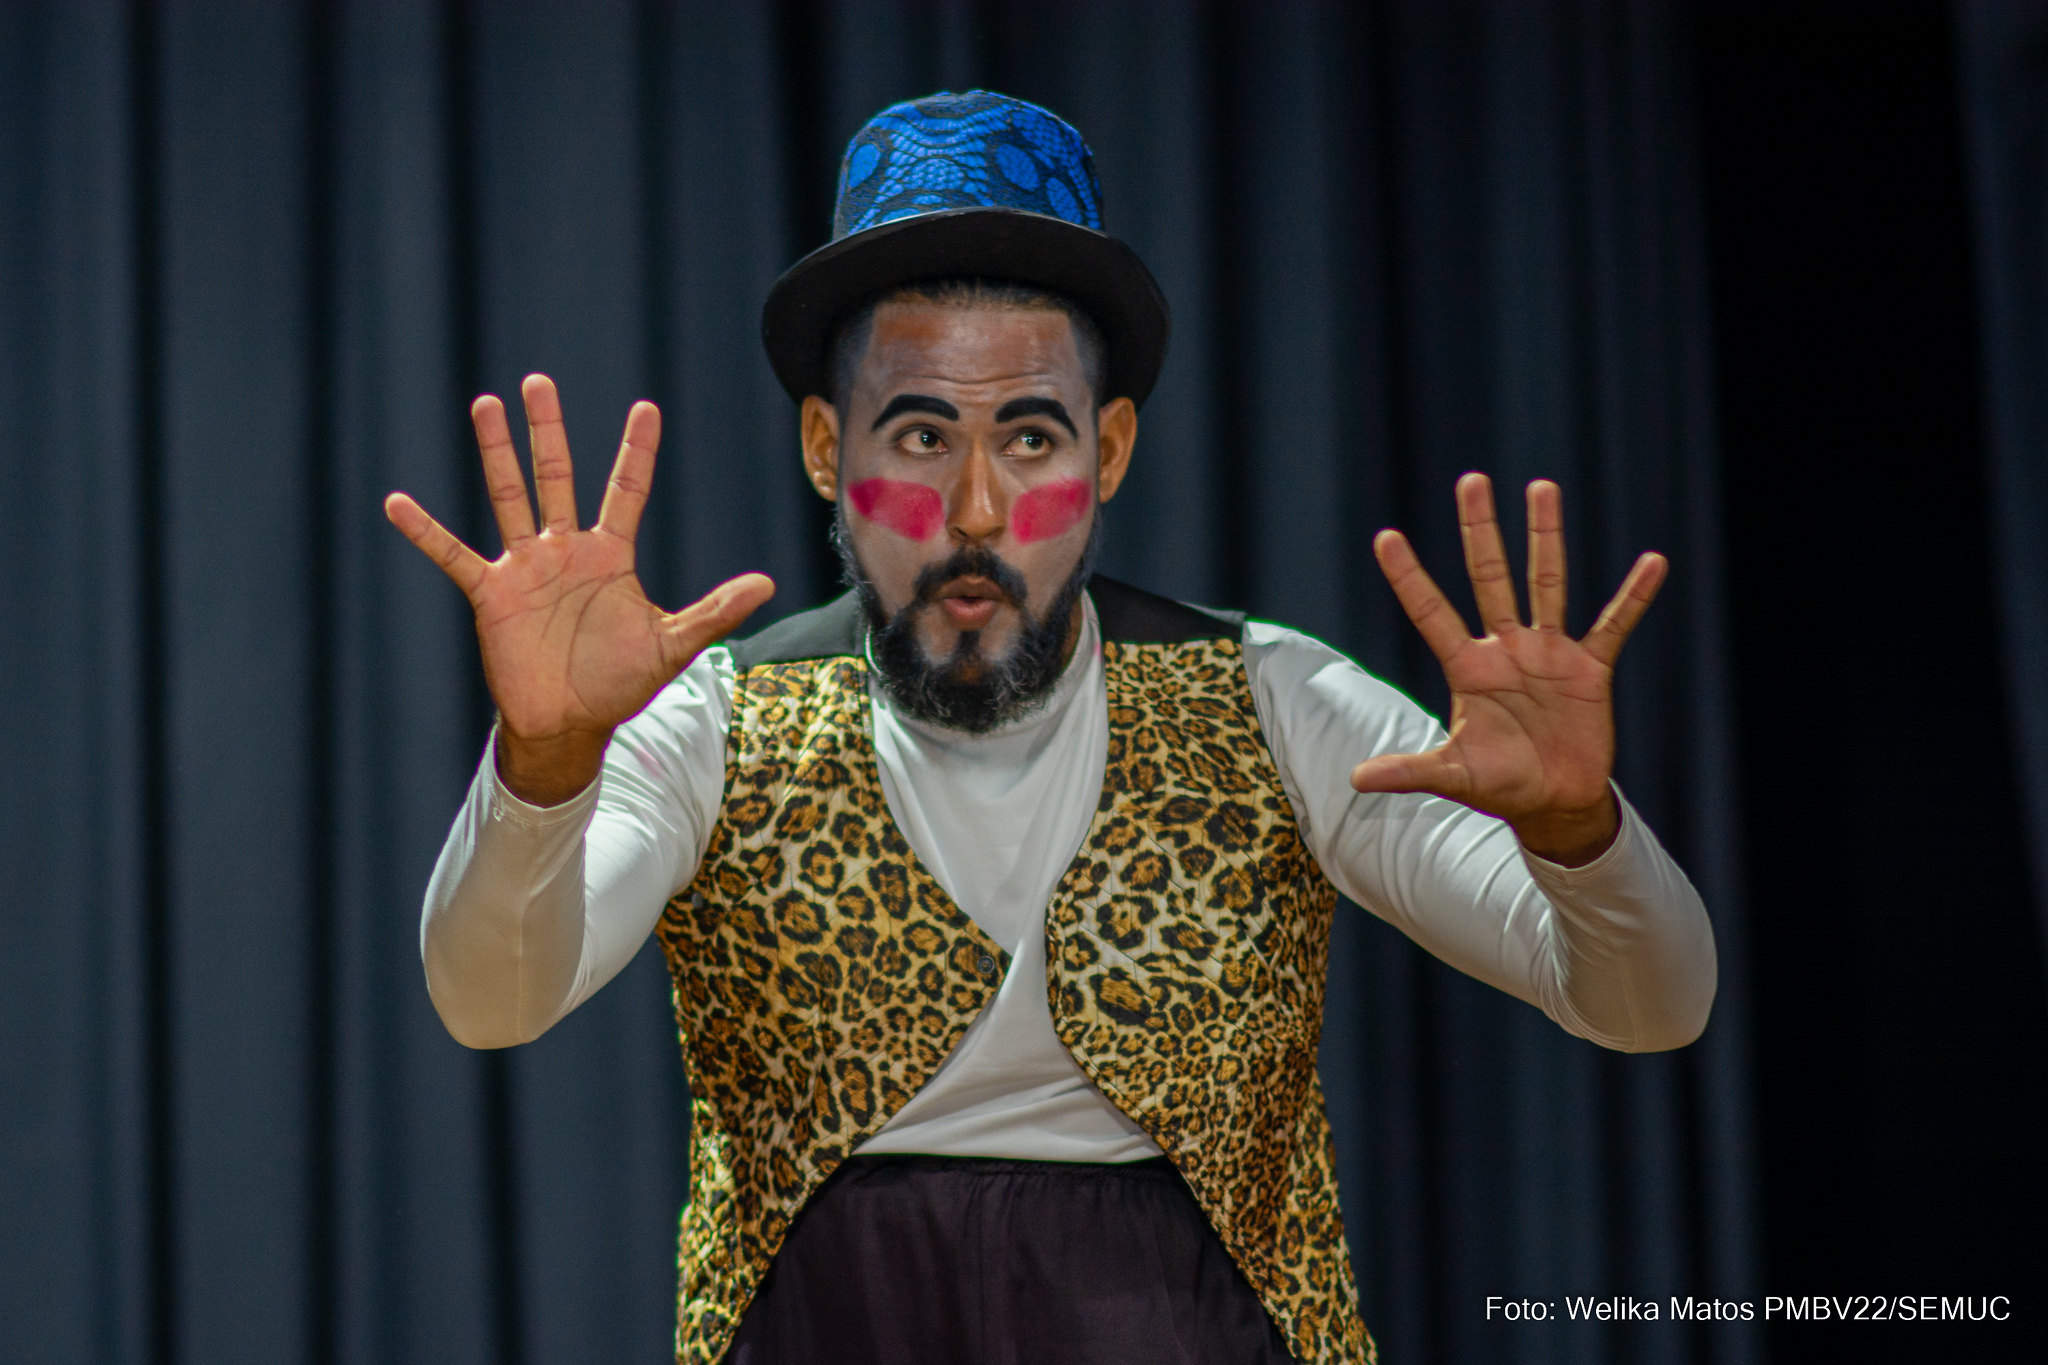 Espetáculo circense ‘Ainda sou criança’ é apresentado no Teatro Municipal de Boa Vista